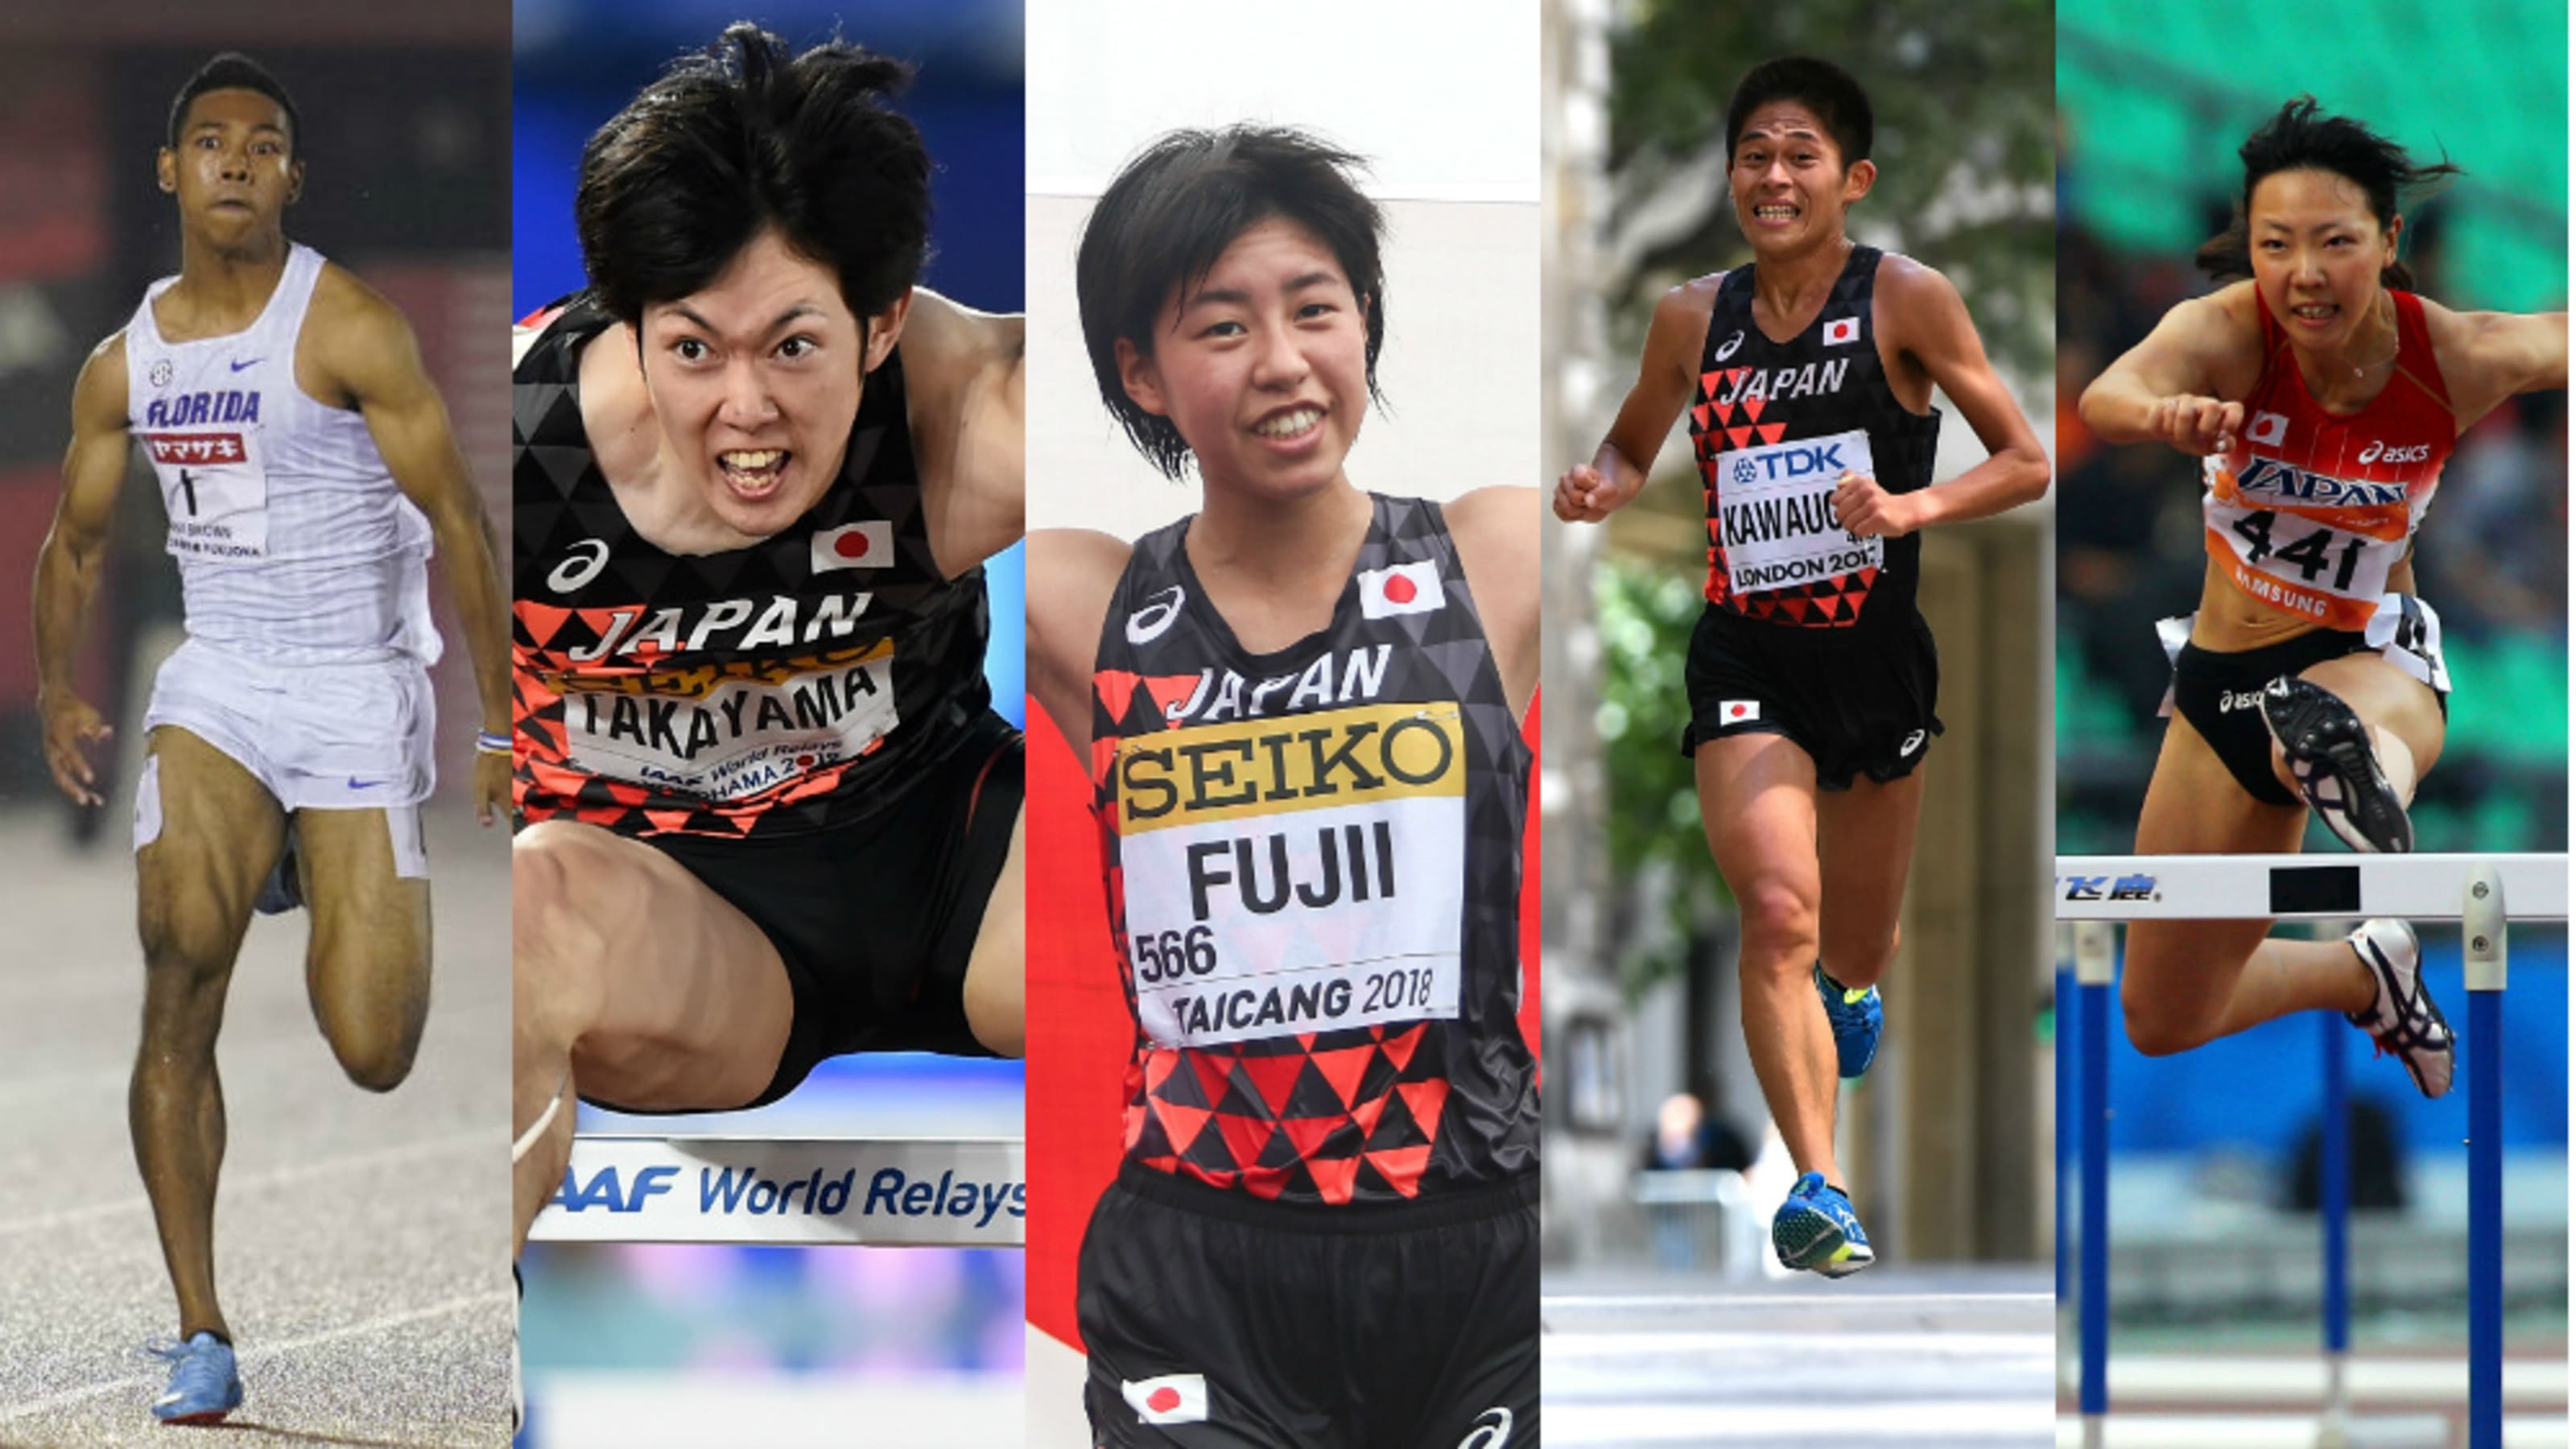 熱戦開幕 世界陸上競技選手権大会に参加する日本代表選手を自己ベストとともに紹介